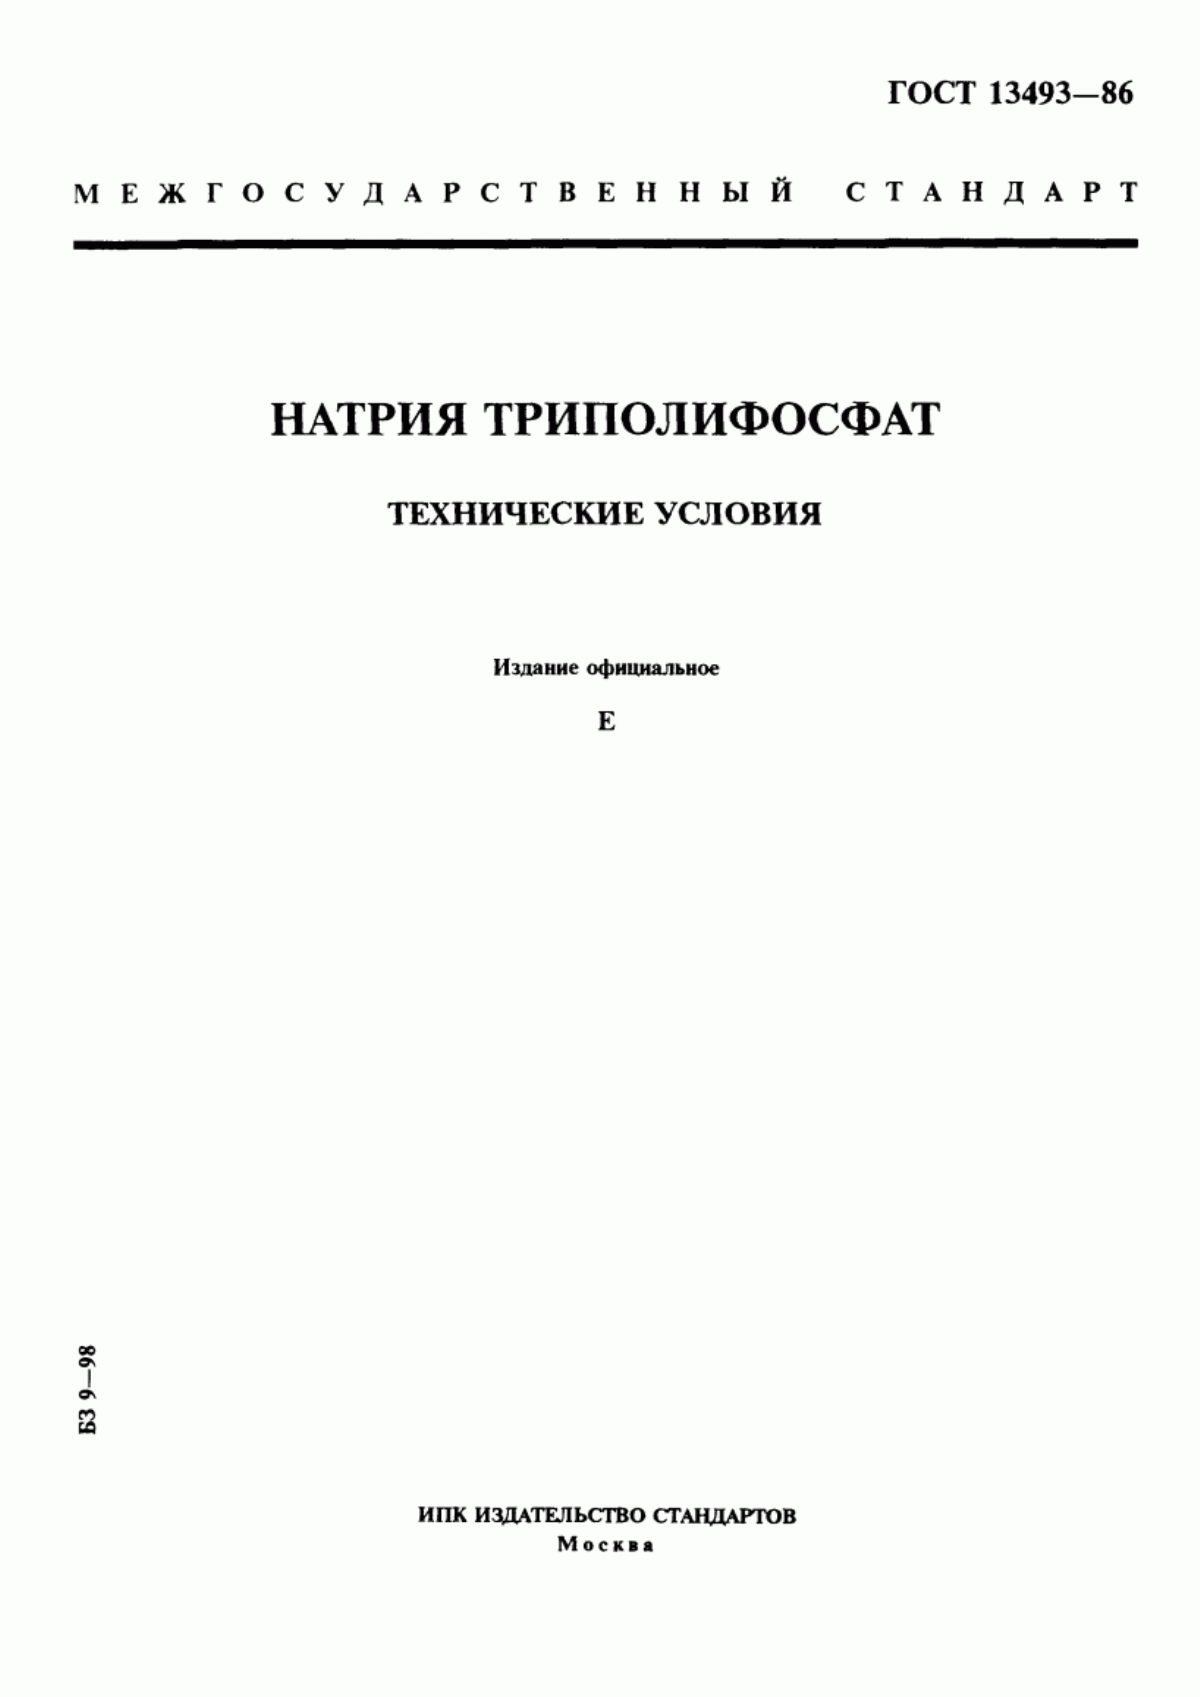 ГОСТ 13493-86 Натрия триполифосфат. Технические условия